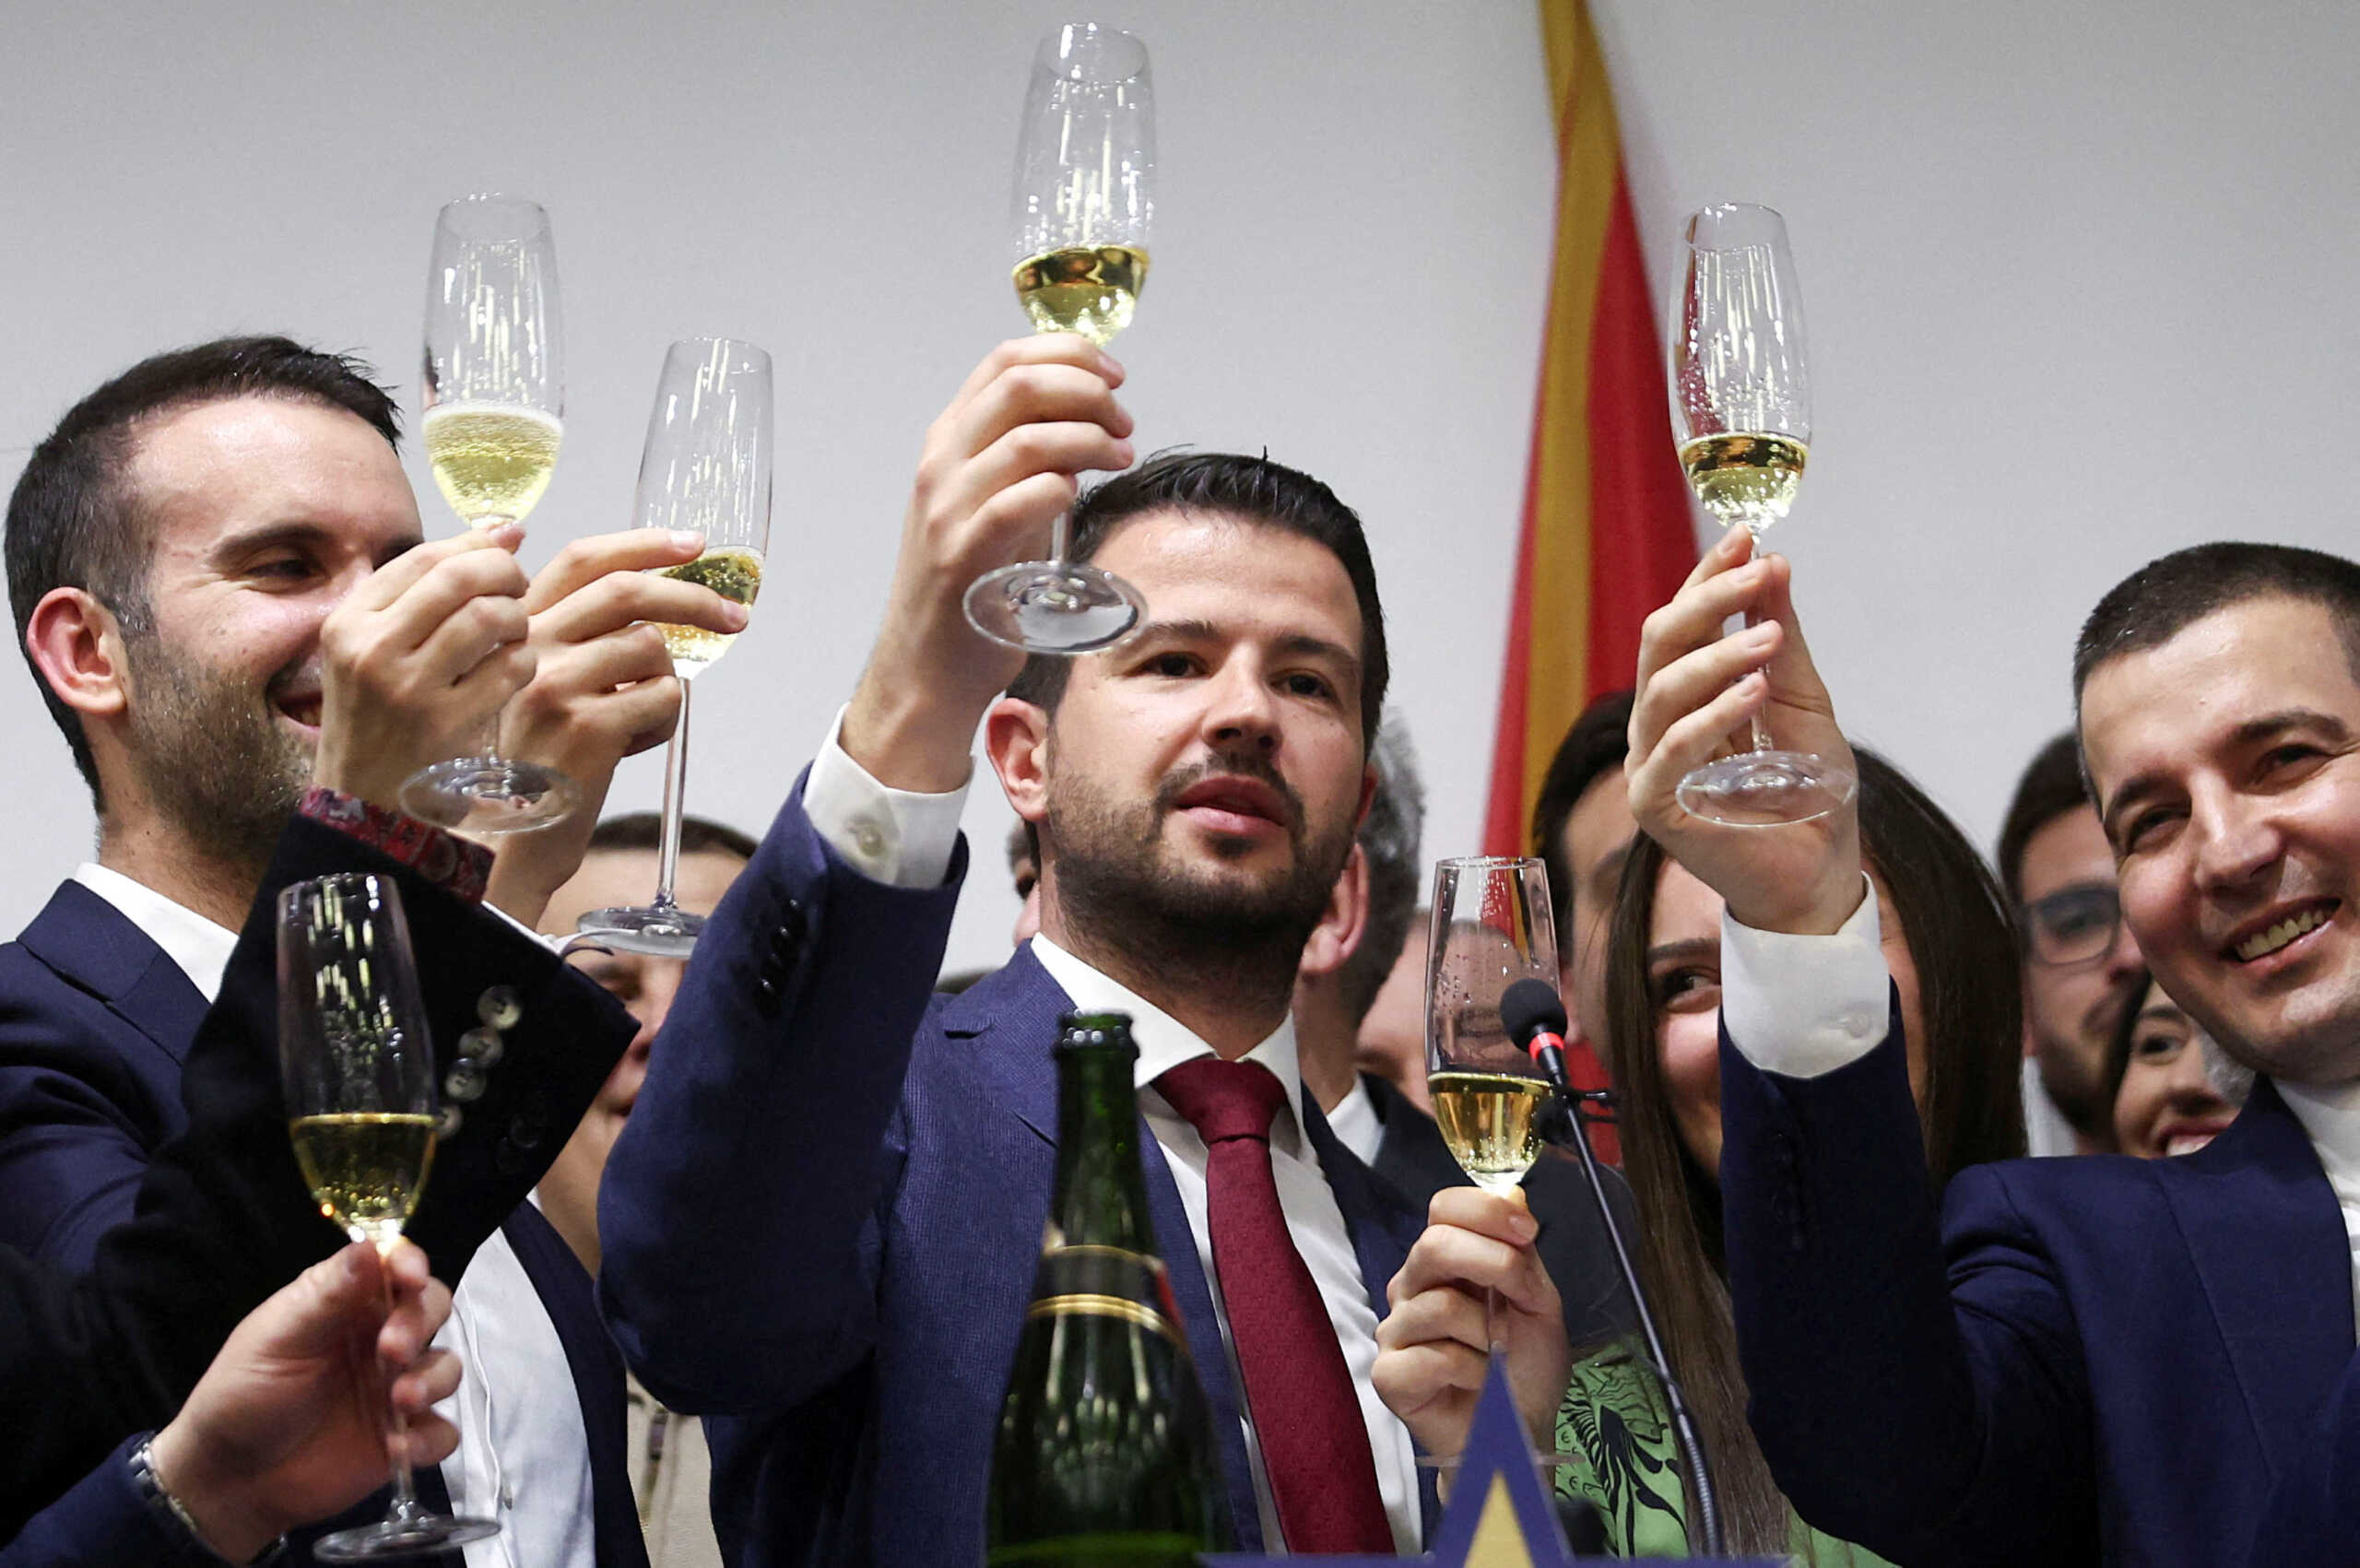 Εκλογές στο Μαυροβούνιο: Νέος πρόεδρος ο 36χρονος Γιάκοβ Μιλάτοβιτς – Τέλος στην 30ετή θητεία του Τζουκάνοβιτς